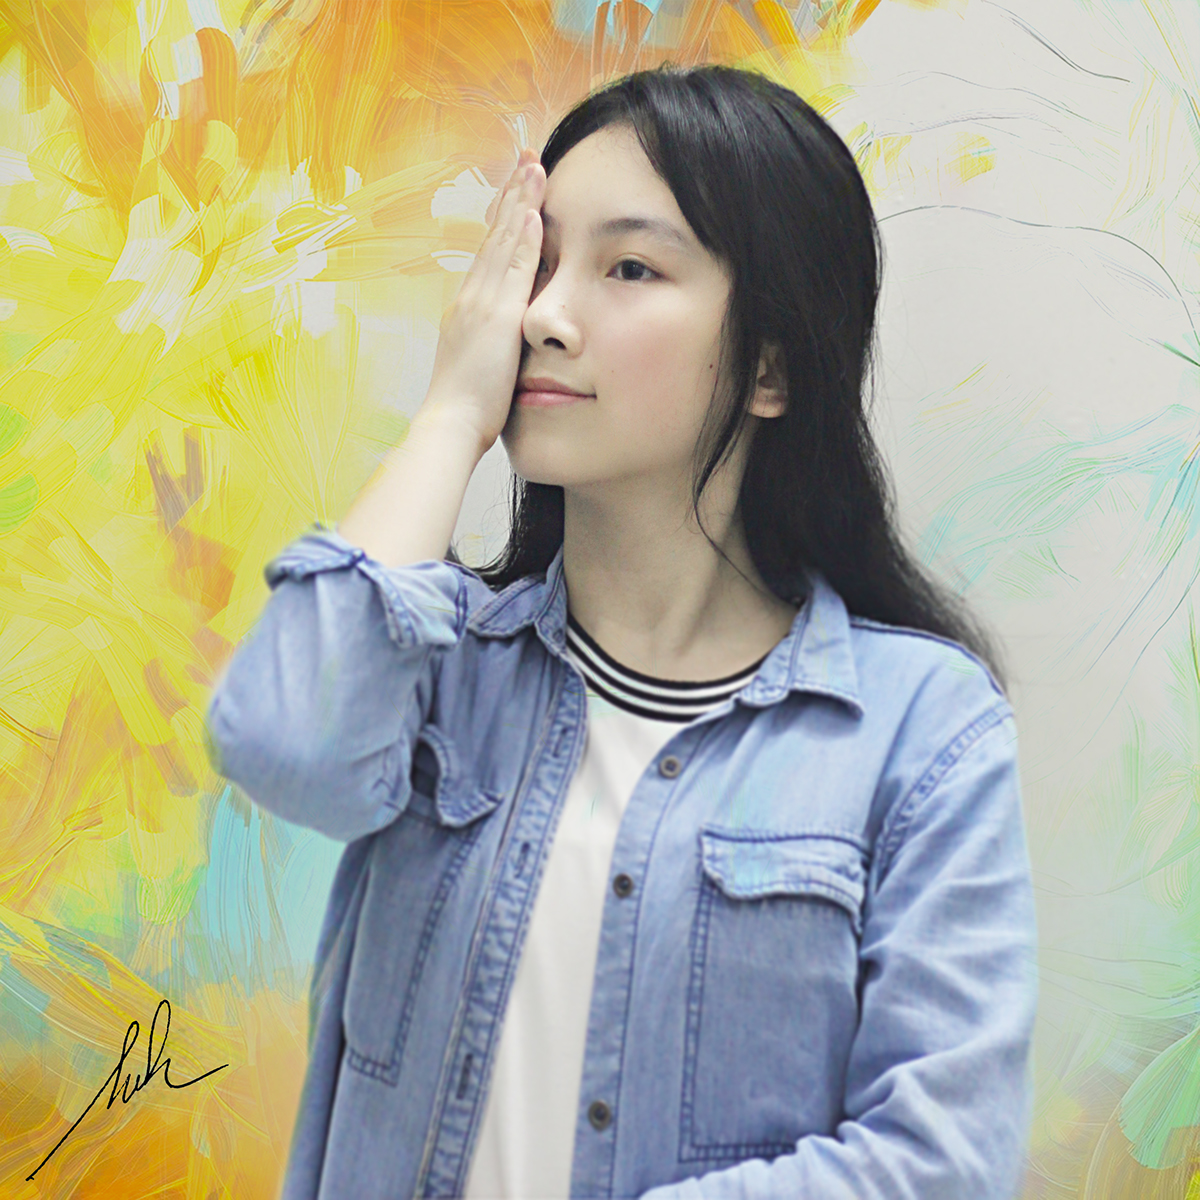 Simple pulchritude simple Beautiful vietnamese girl teenager Painted oil